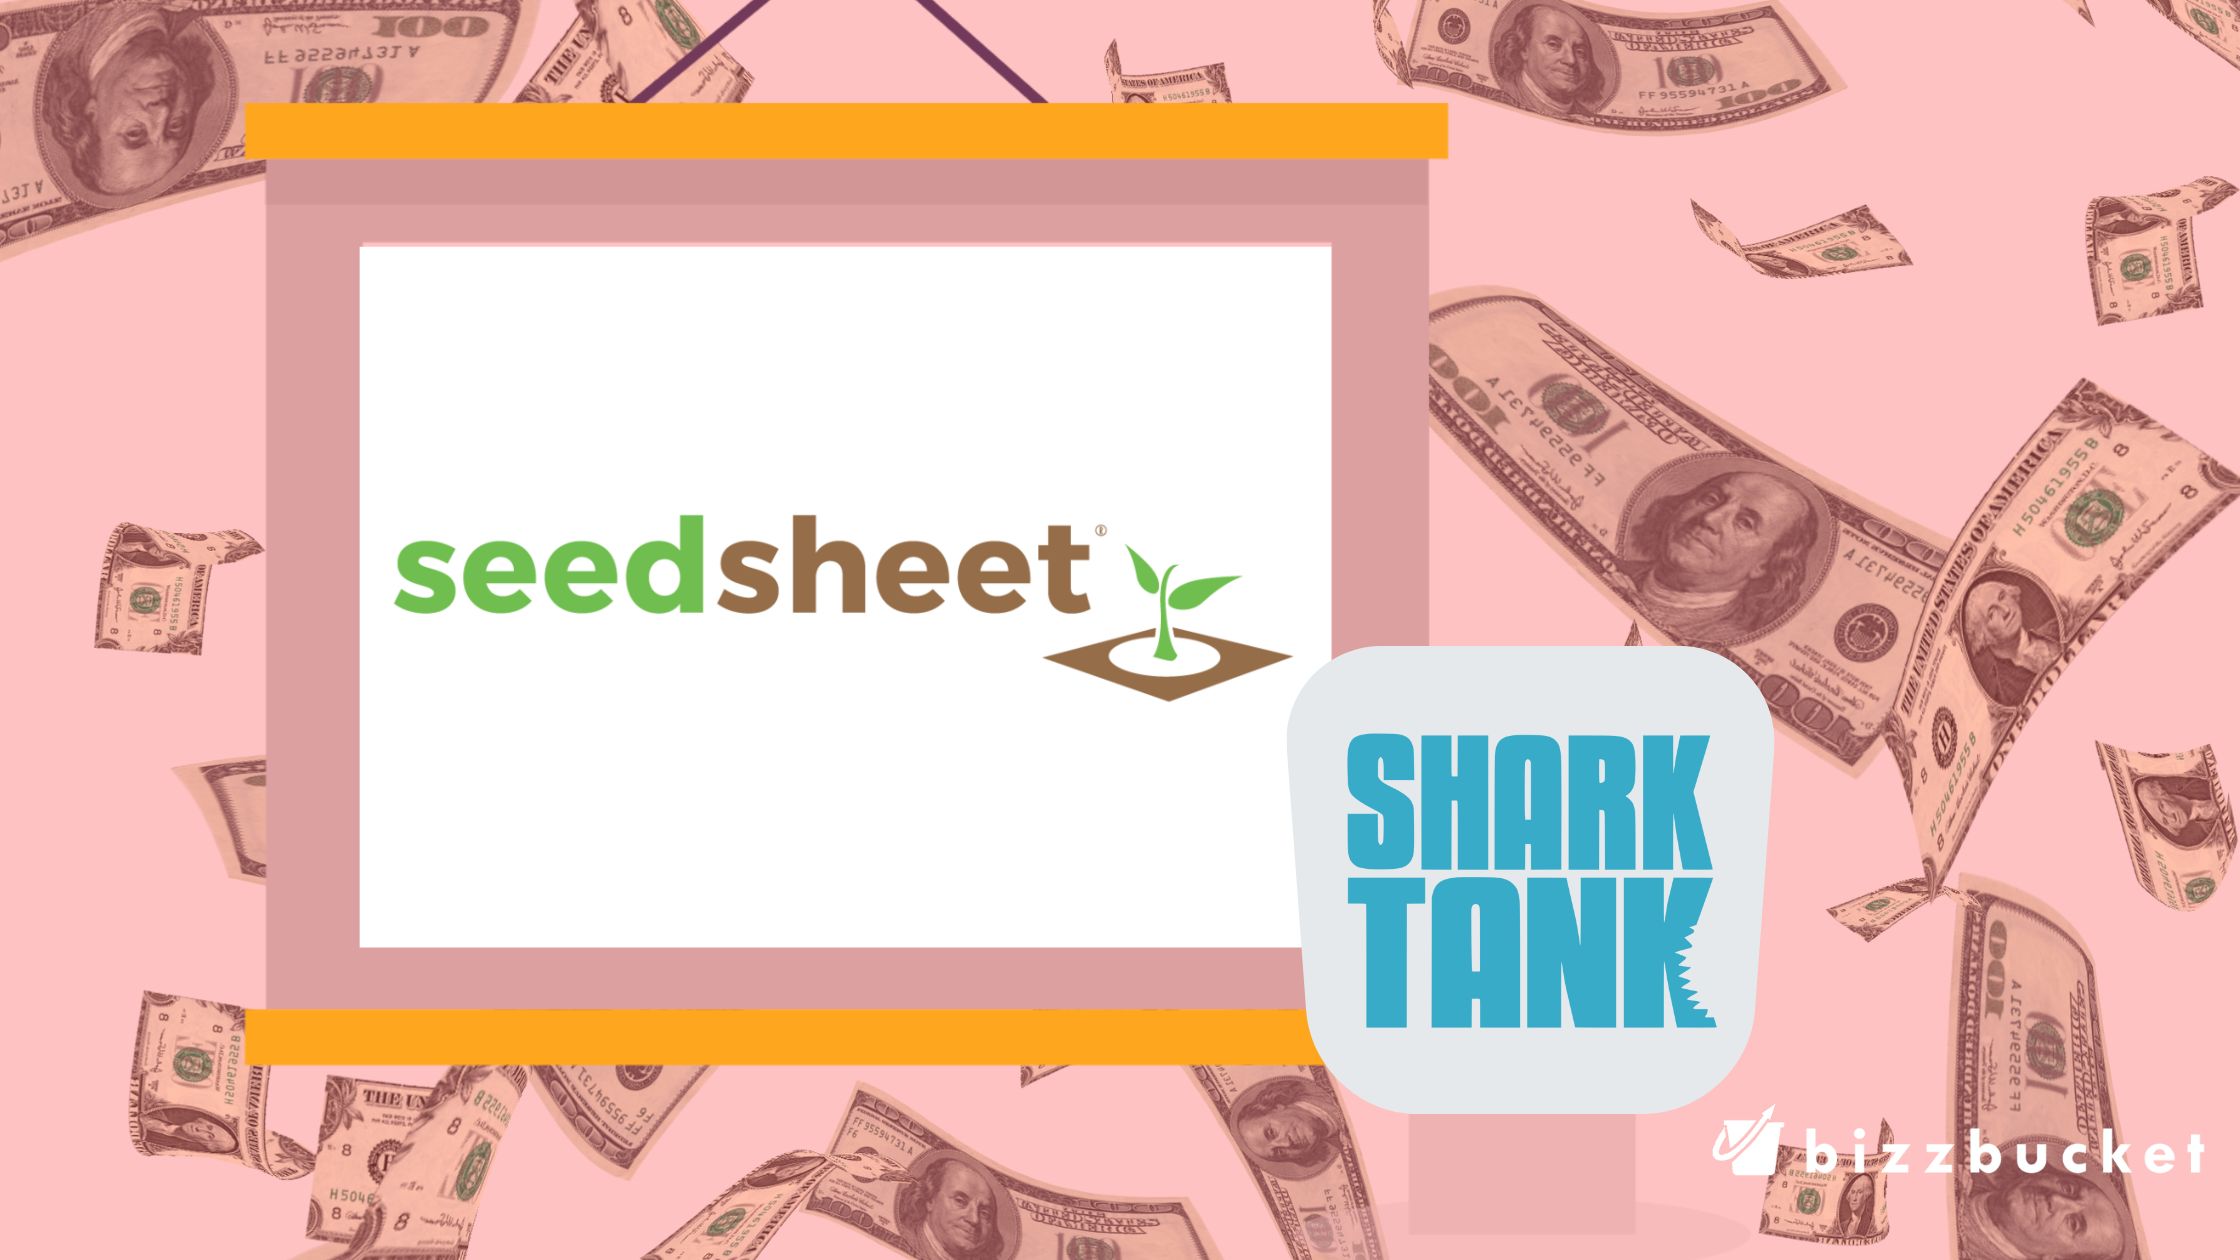 Seed Sheet shark tank update